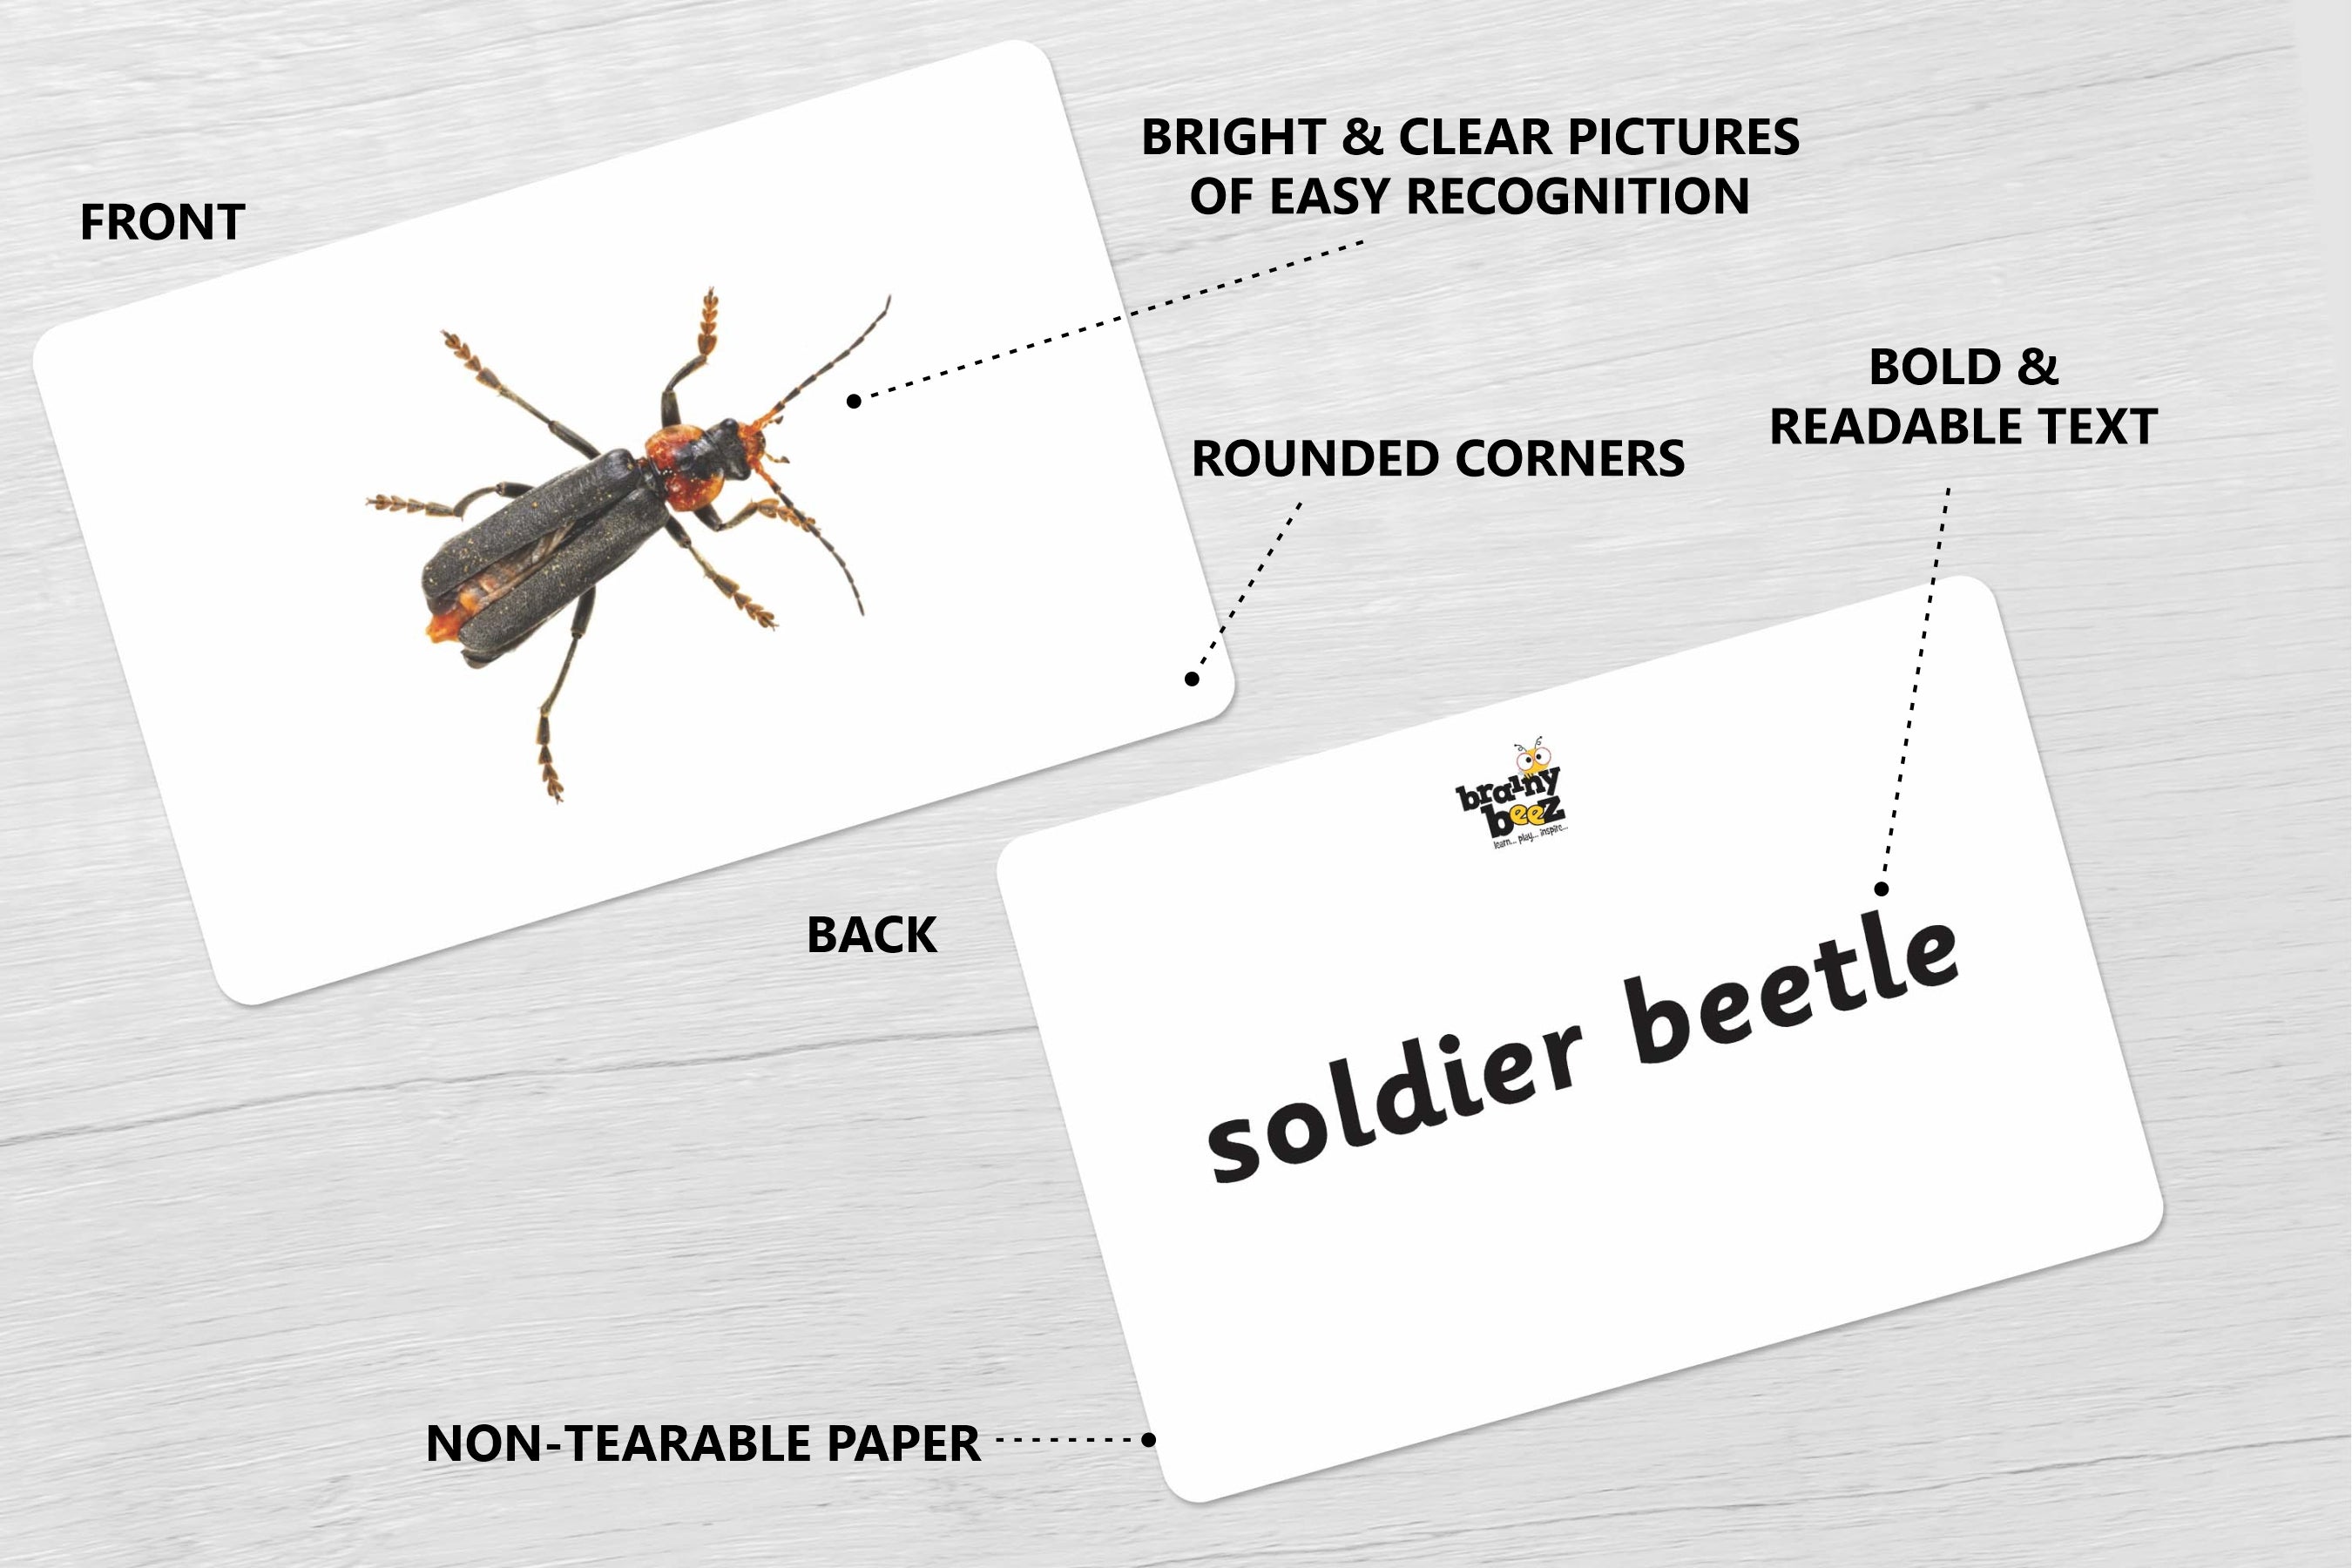 Types of Beetles